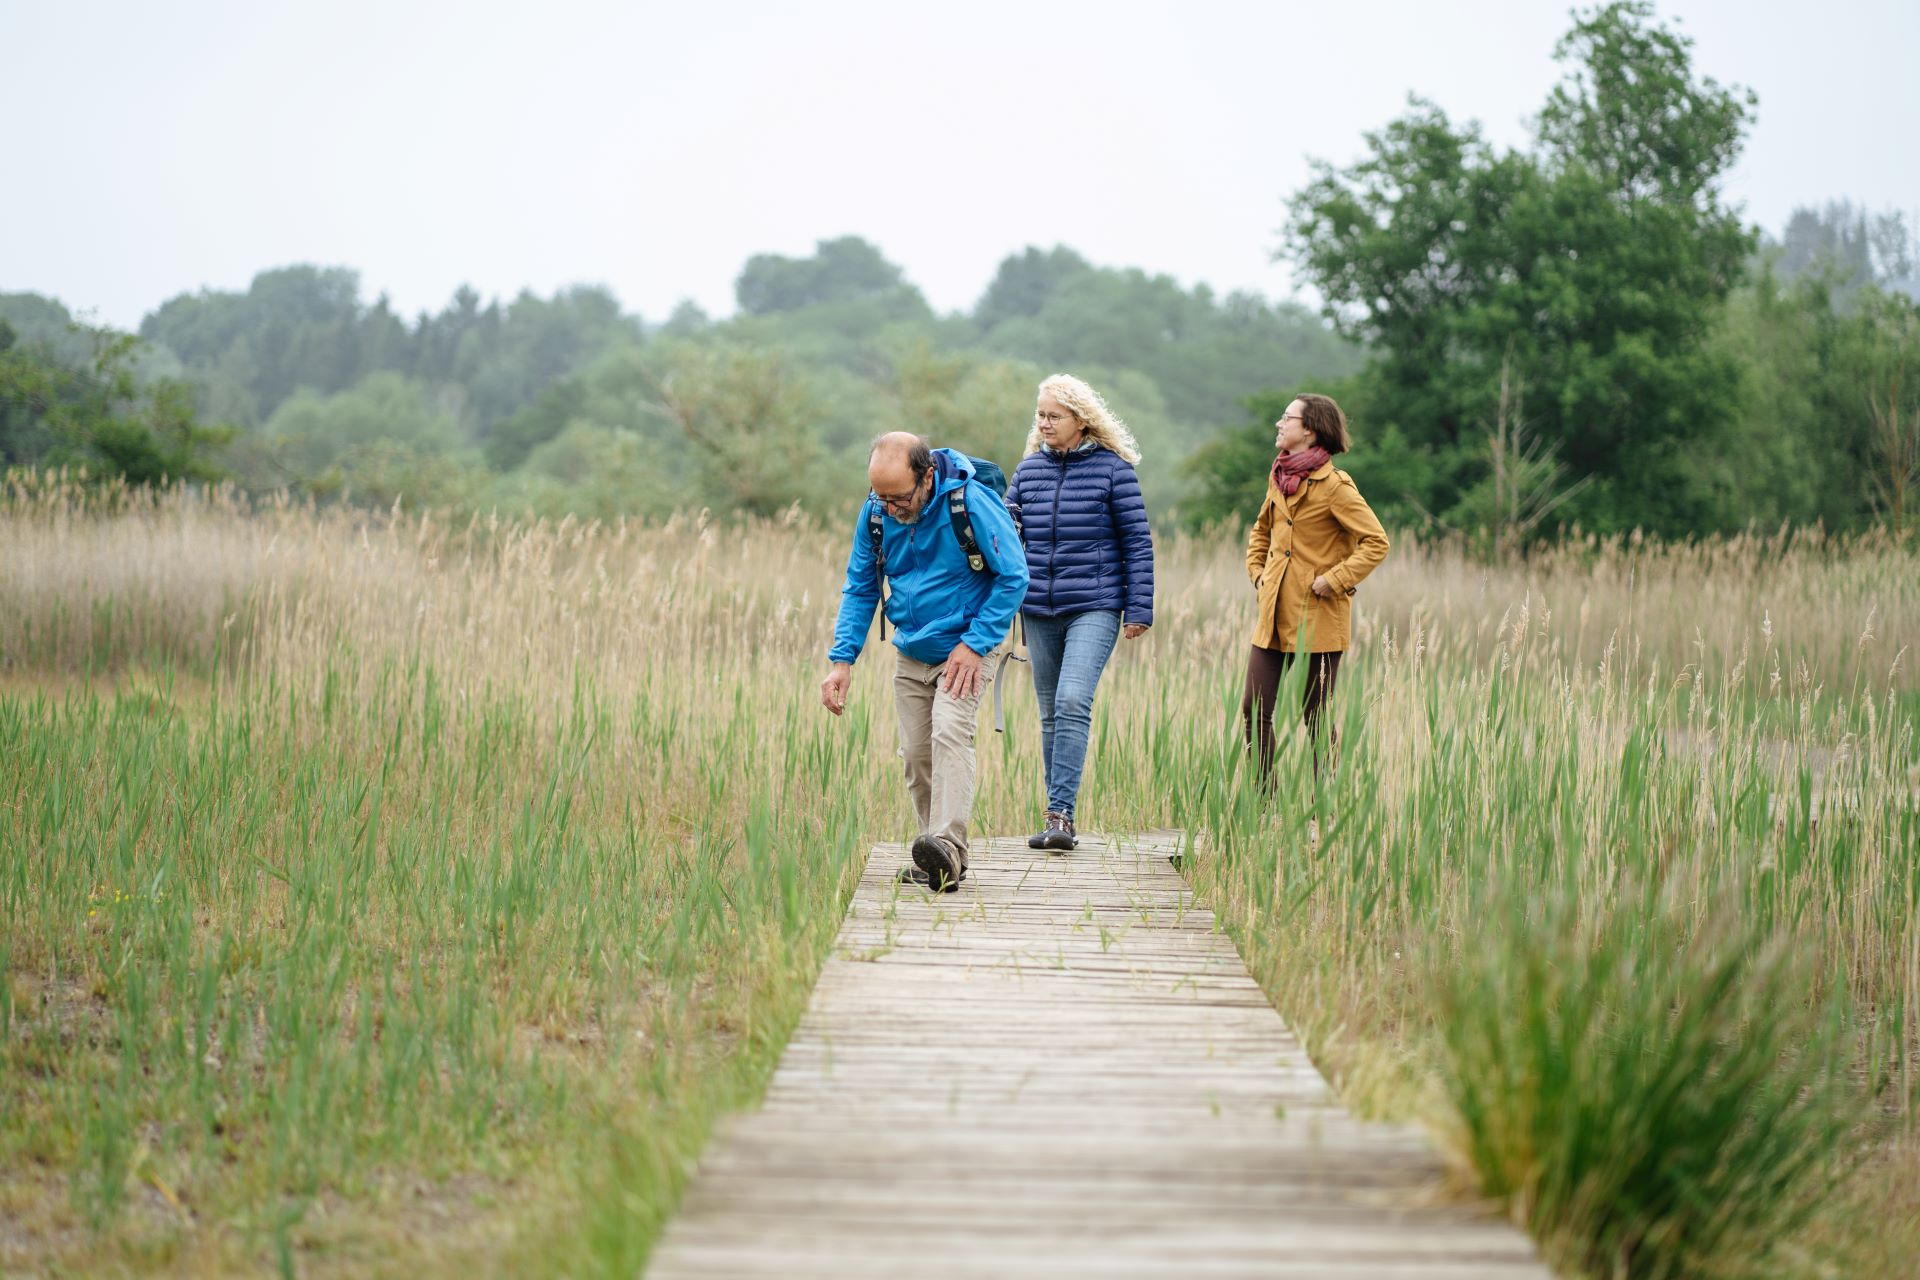 Un homme et deux femmes marchent sur une promenade au milieu de leur marche. Ils sont habillés chaudement et la promenade s'étend à travers un champ de plantes sauvages, avec une forêt en arrière-plan.